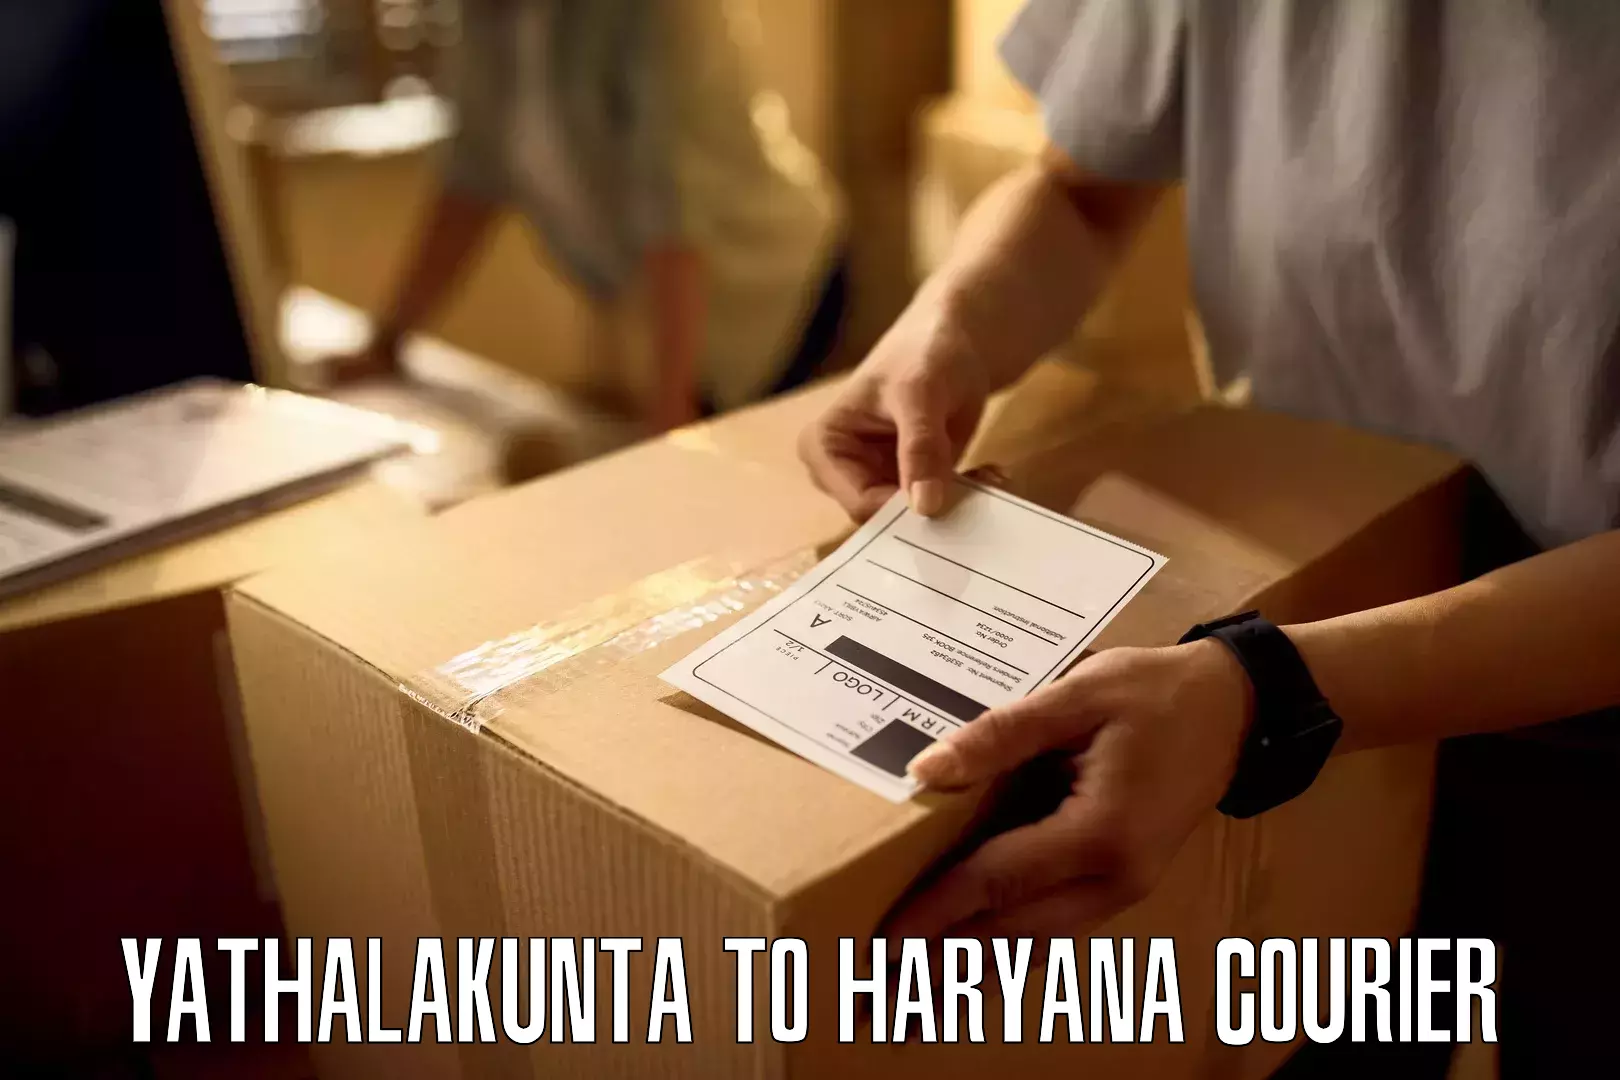 Heavyweight shipping Yathalakunta to Kurukshetra